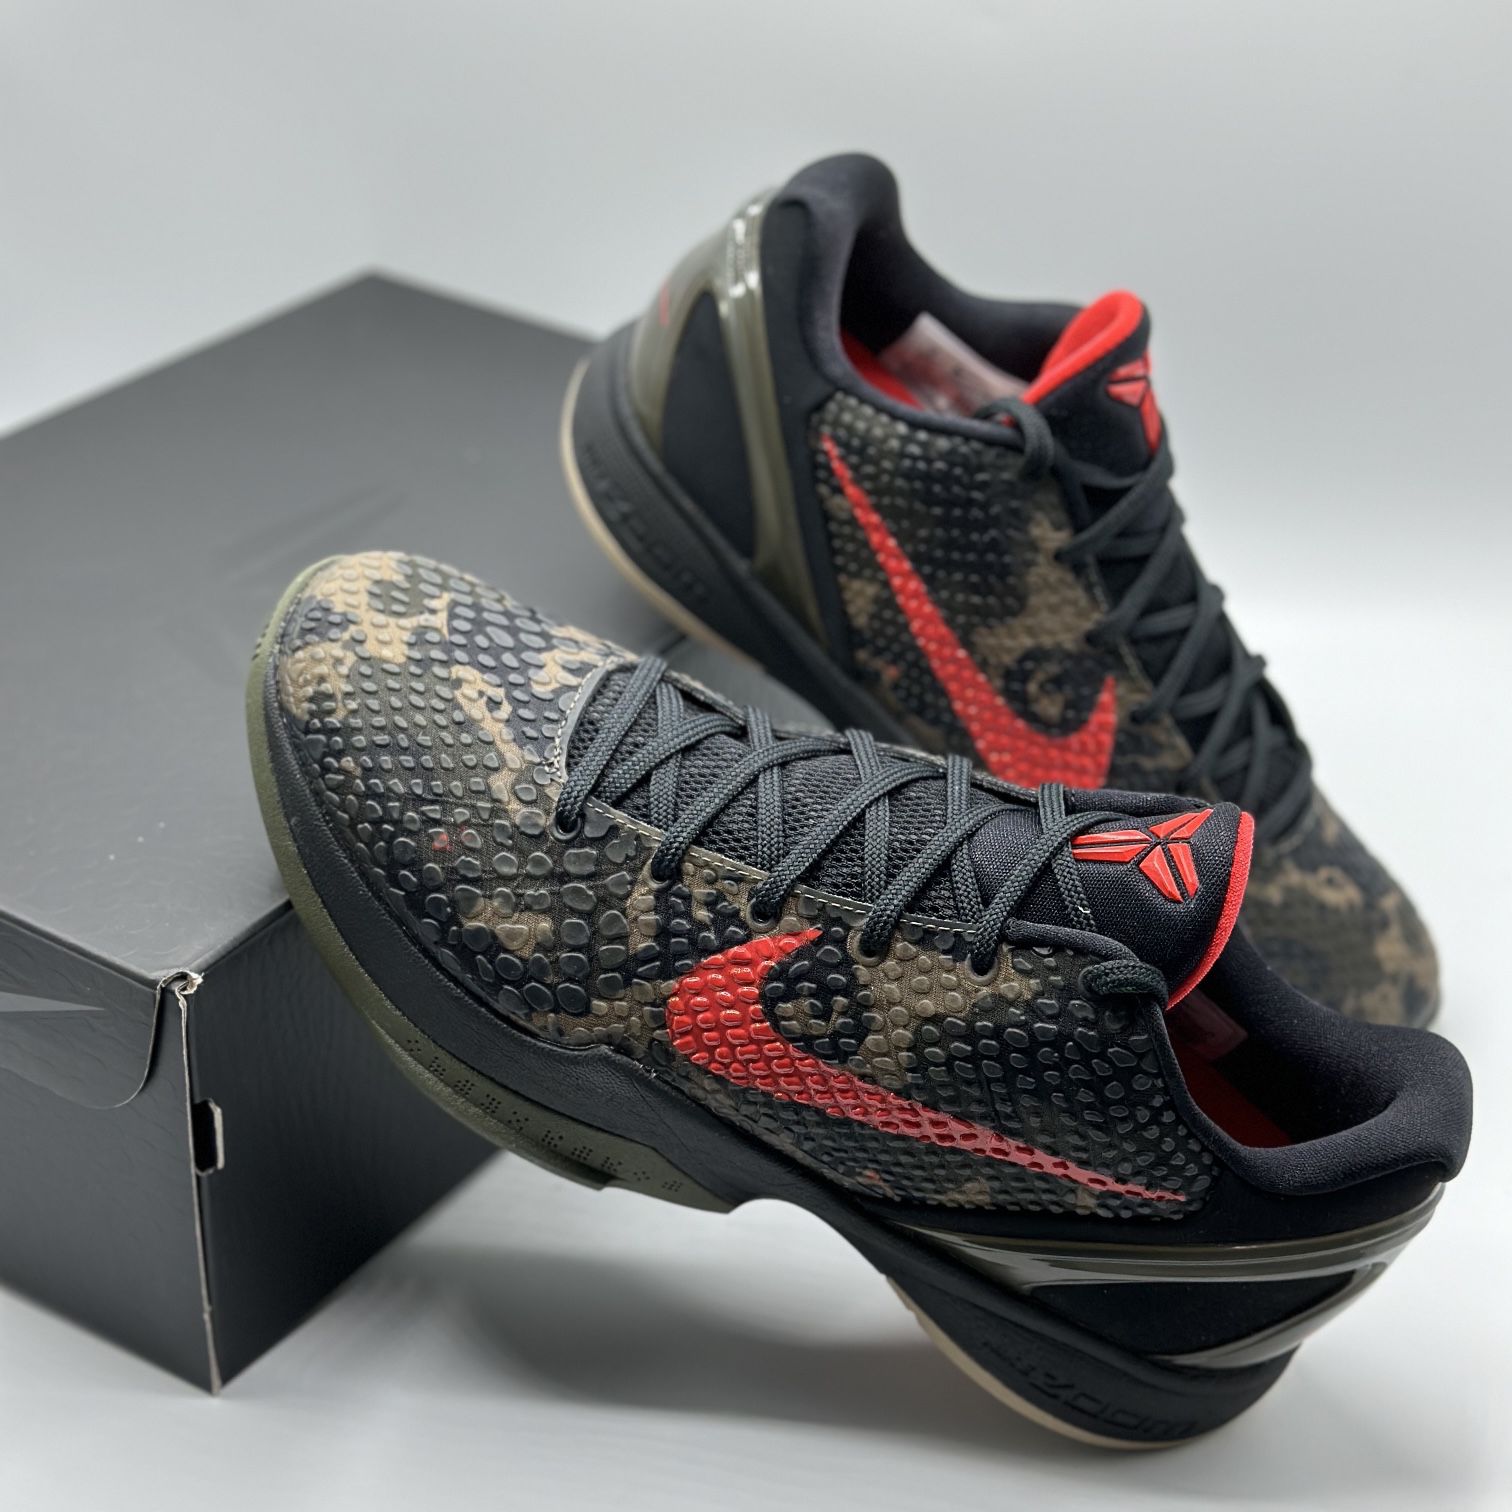 Nike Kobe 6 Protro